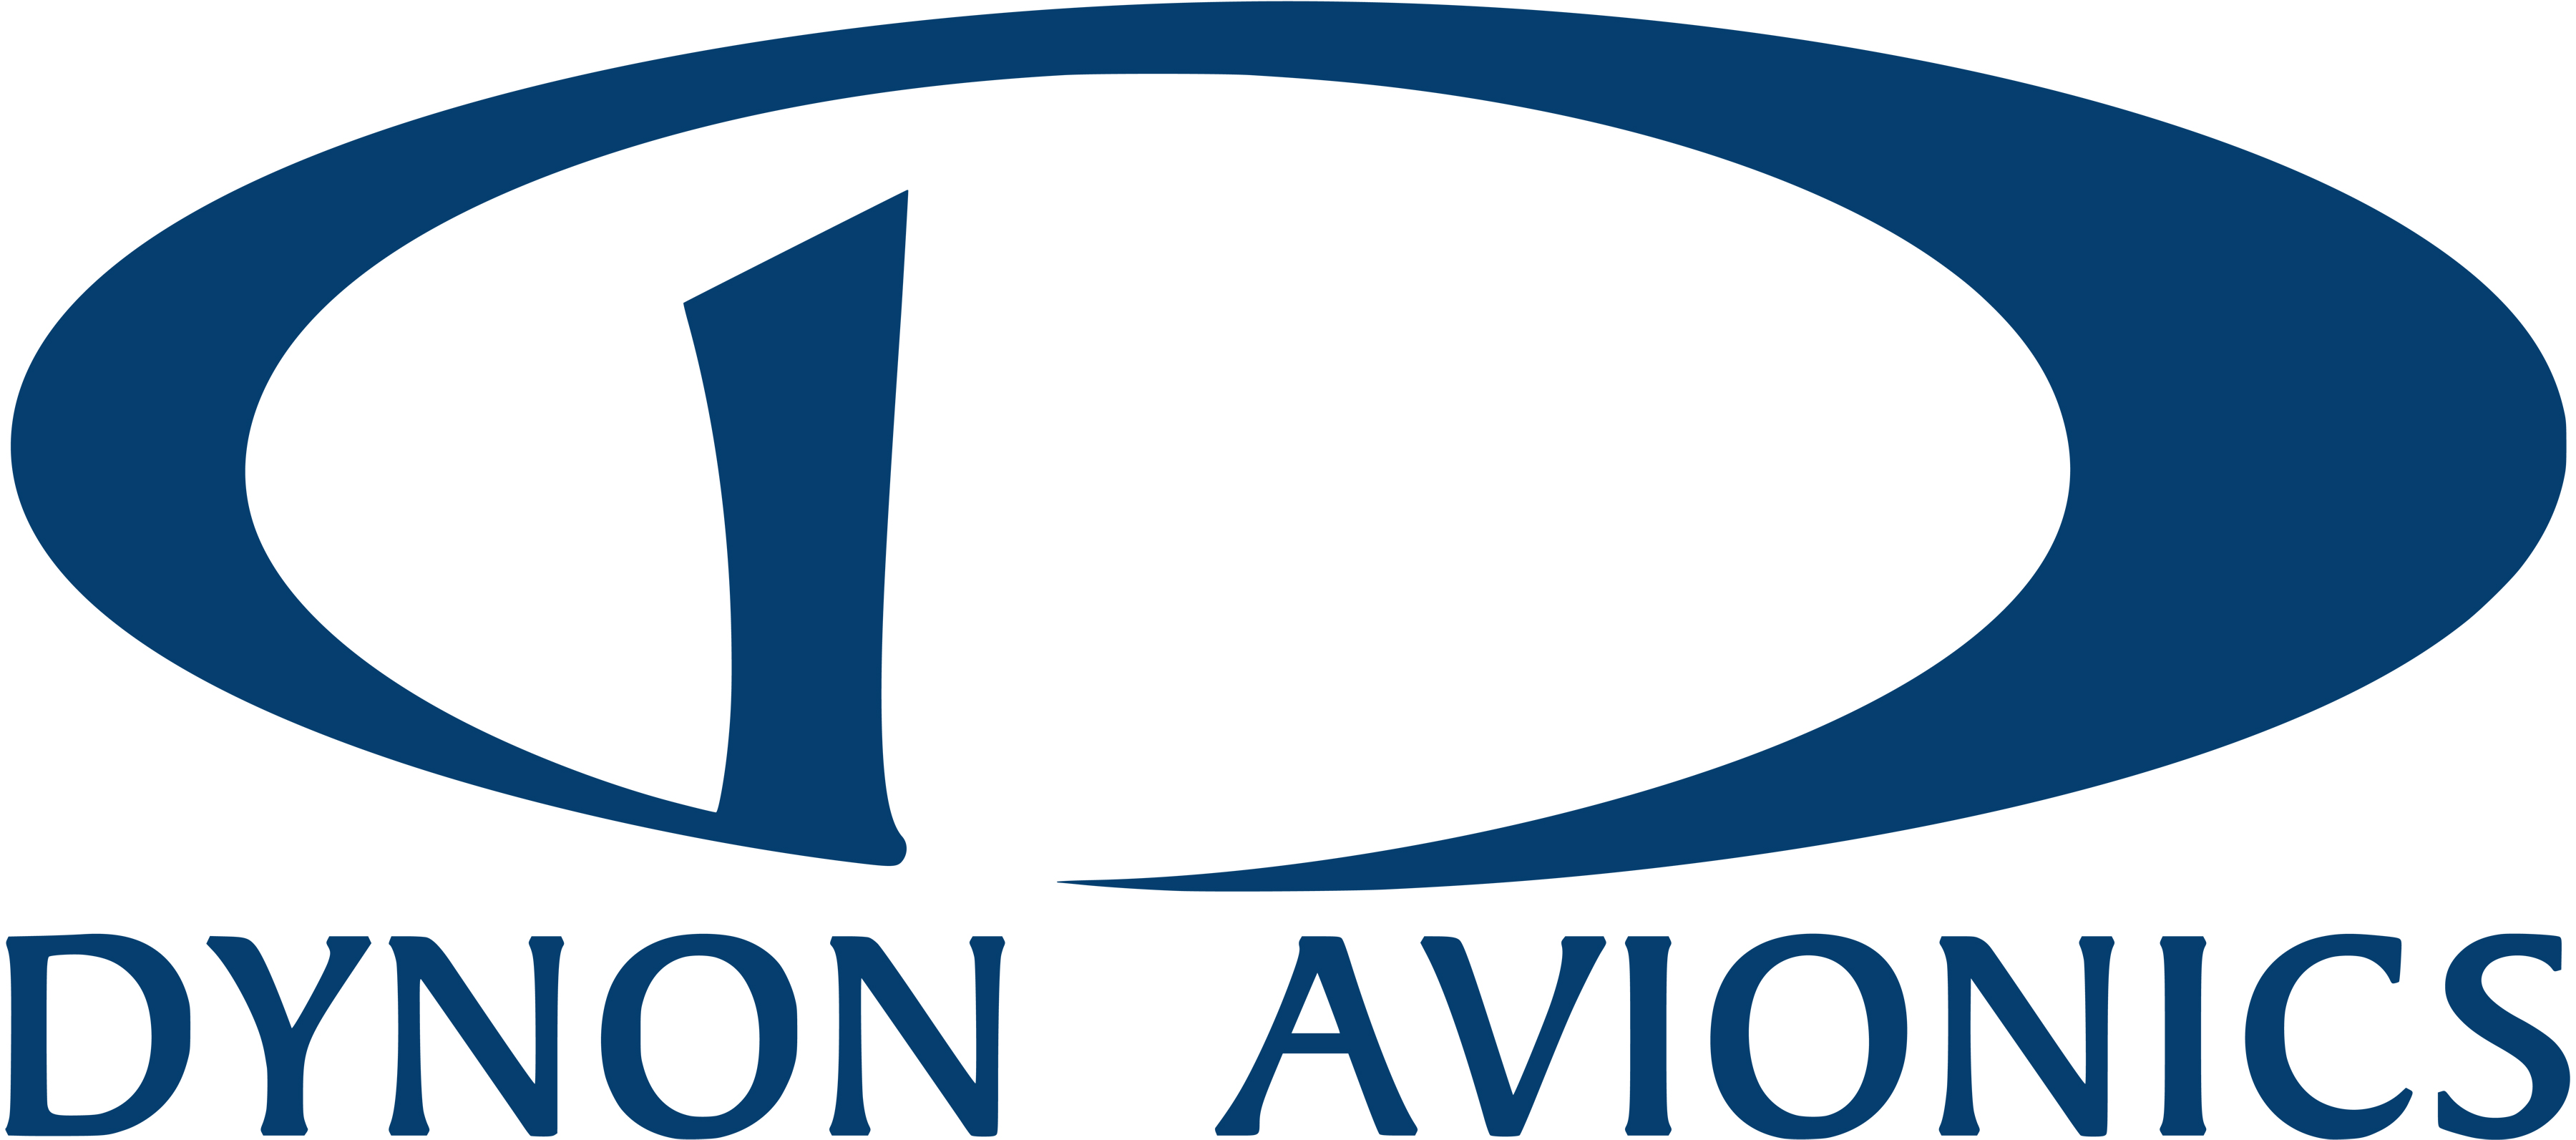 avionics logo 03